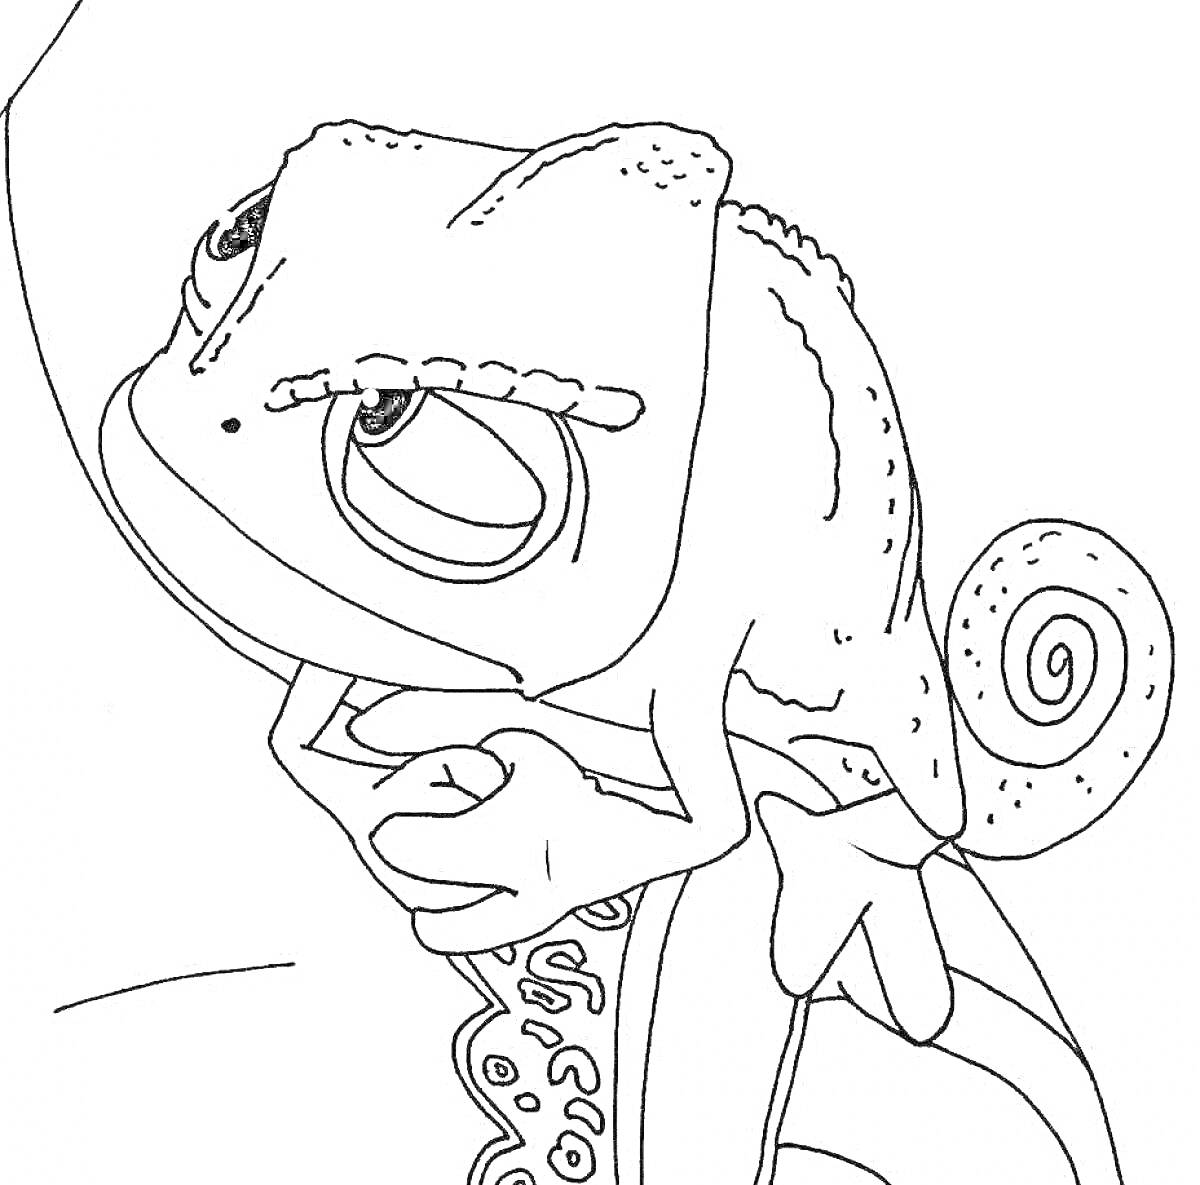 Раскраска Хамелеон Паскаль из мультфильма, сидящий на руке